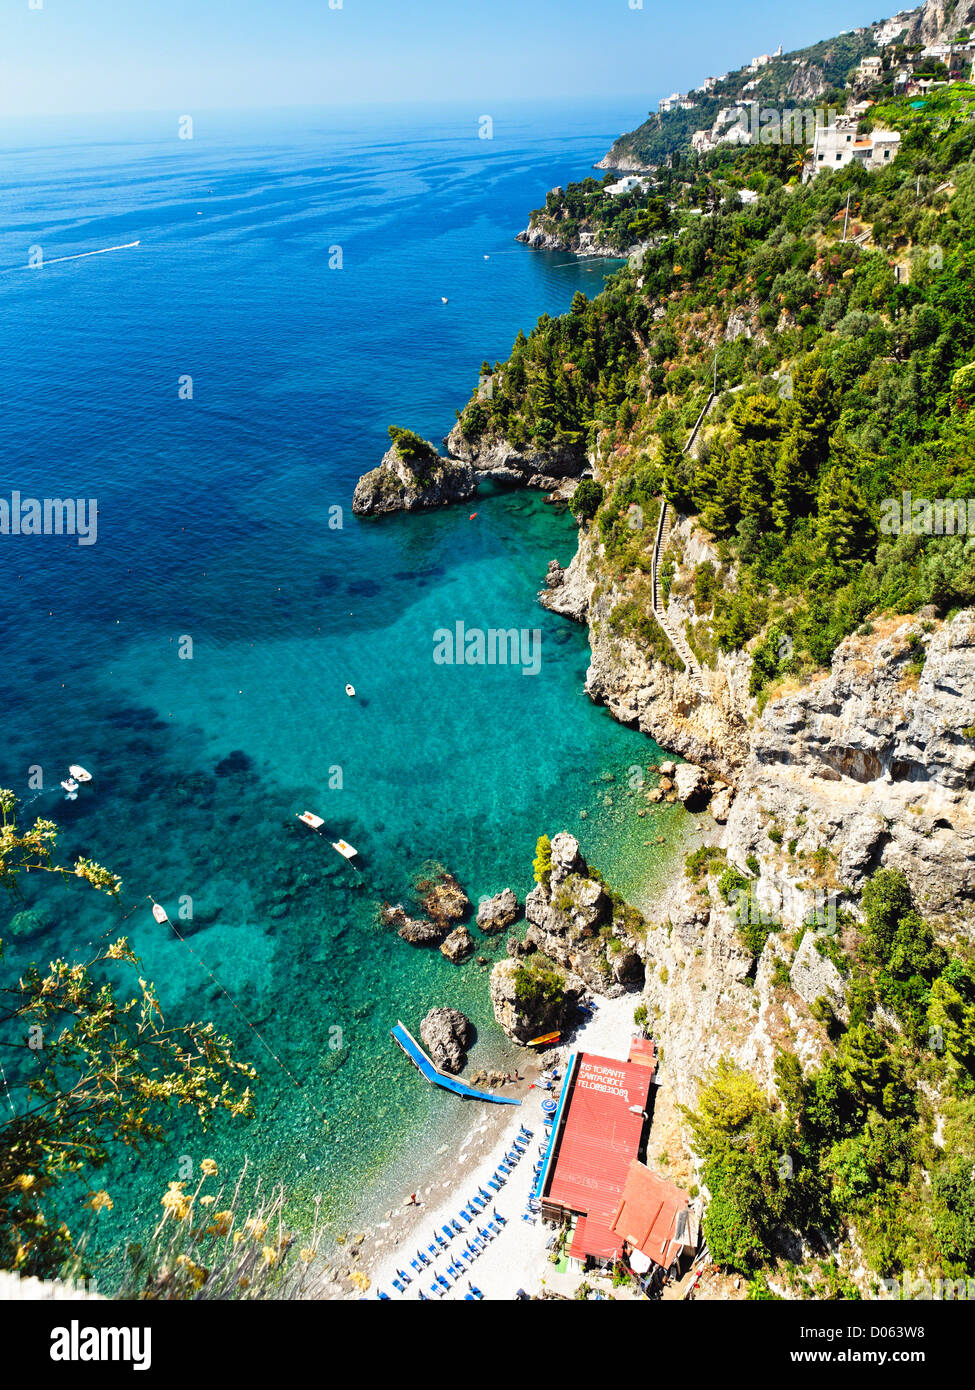 Portrait d'une plage de la côte amalfitaine, Campanie, Italie. Banque D'Images